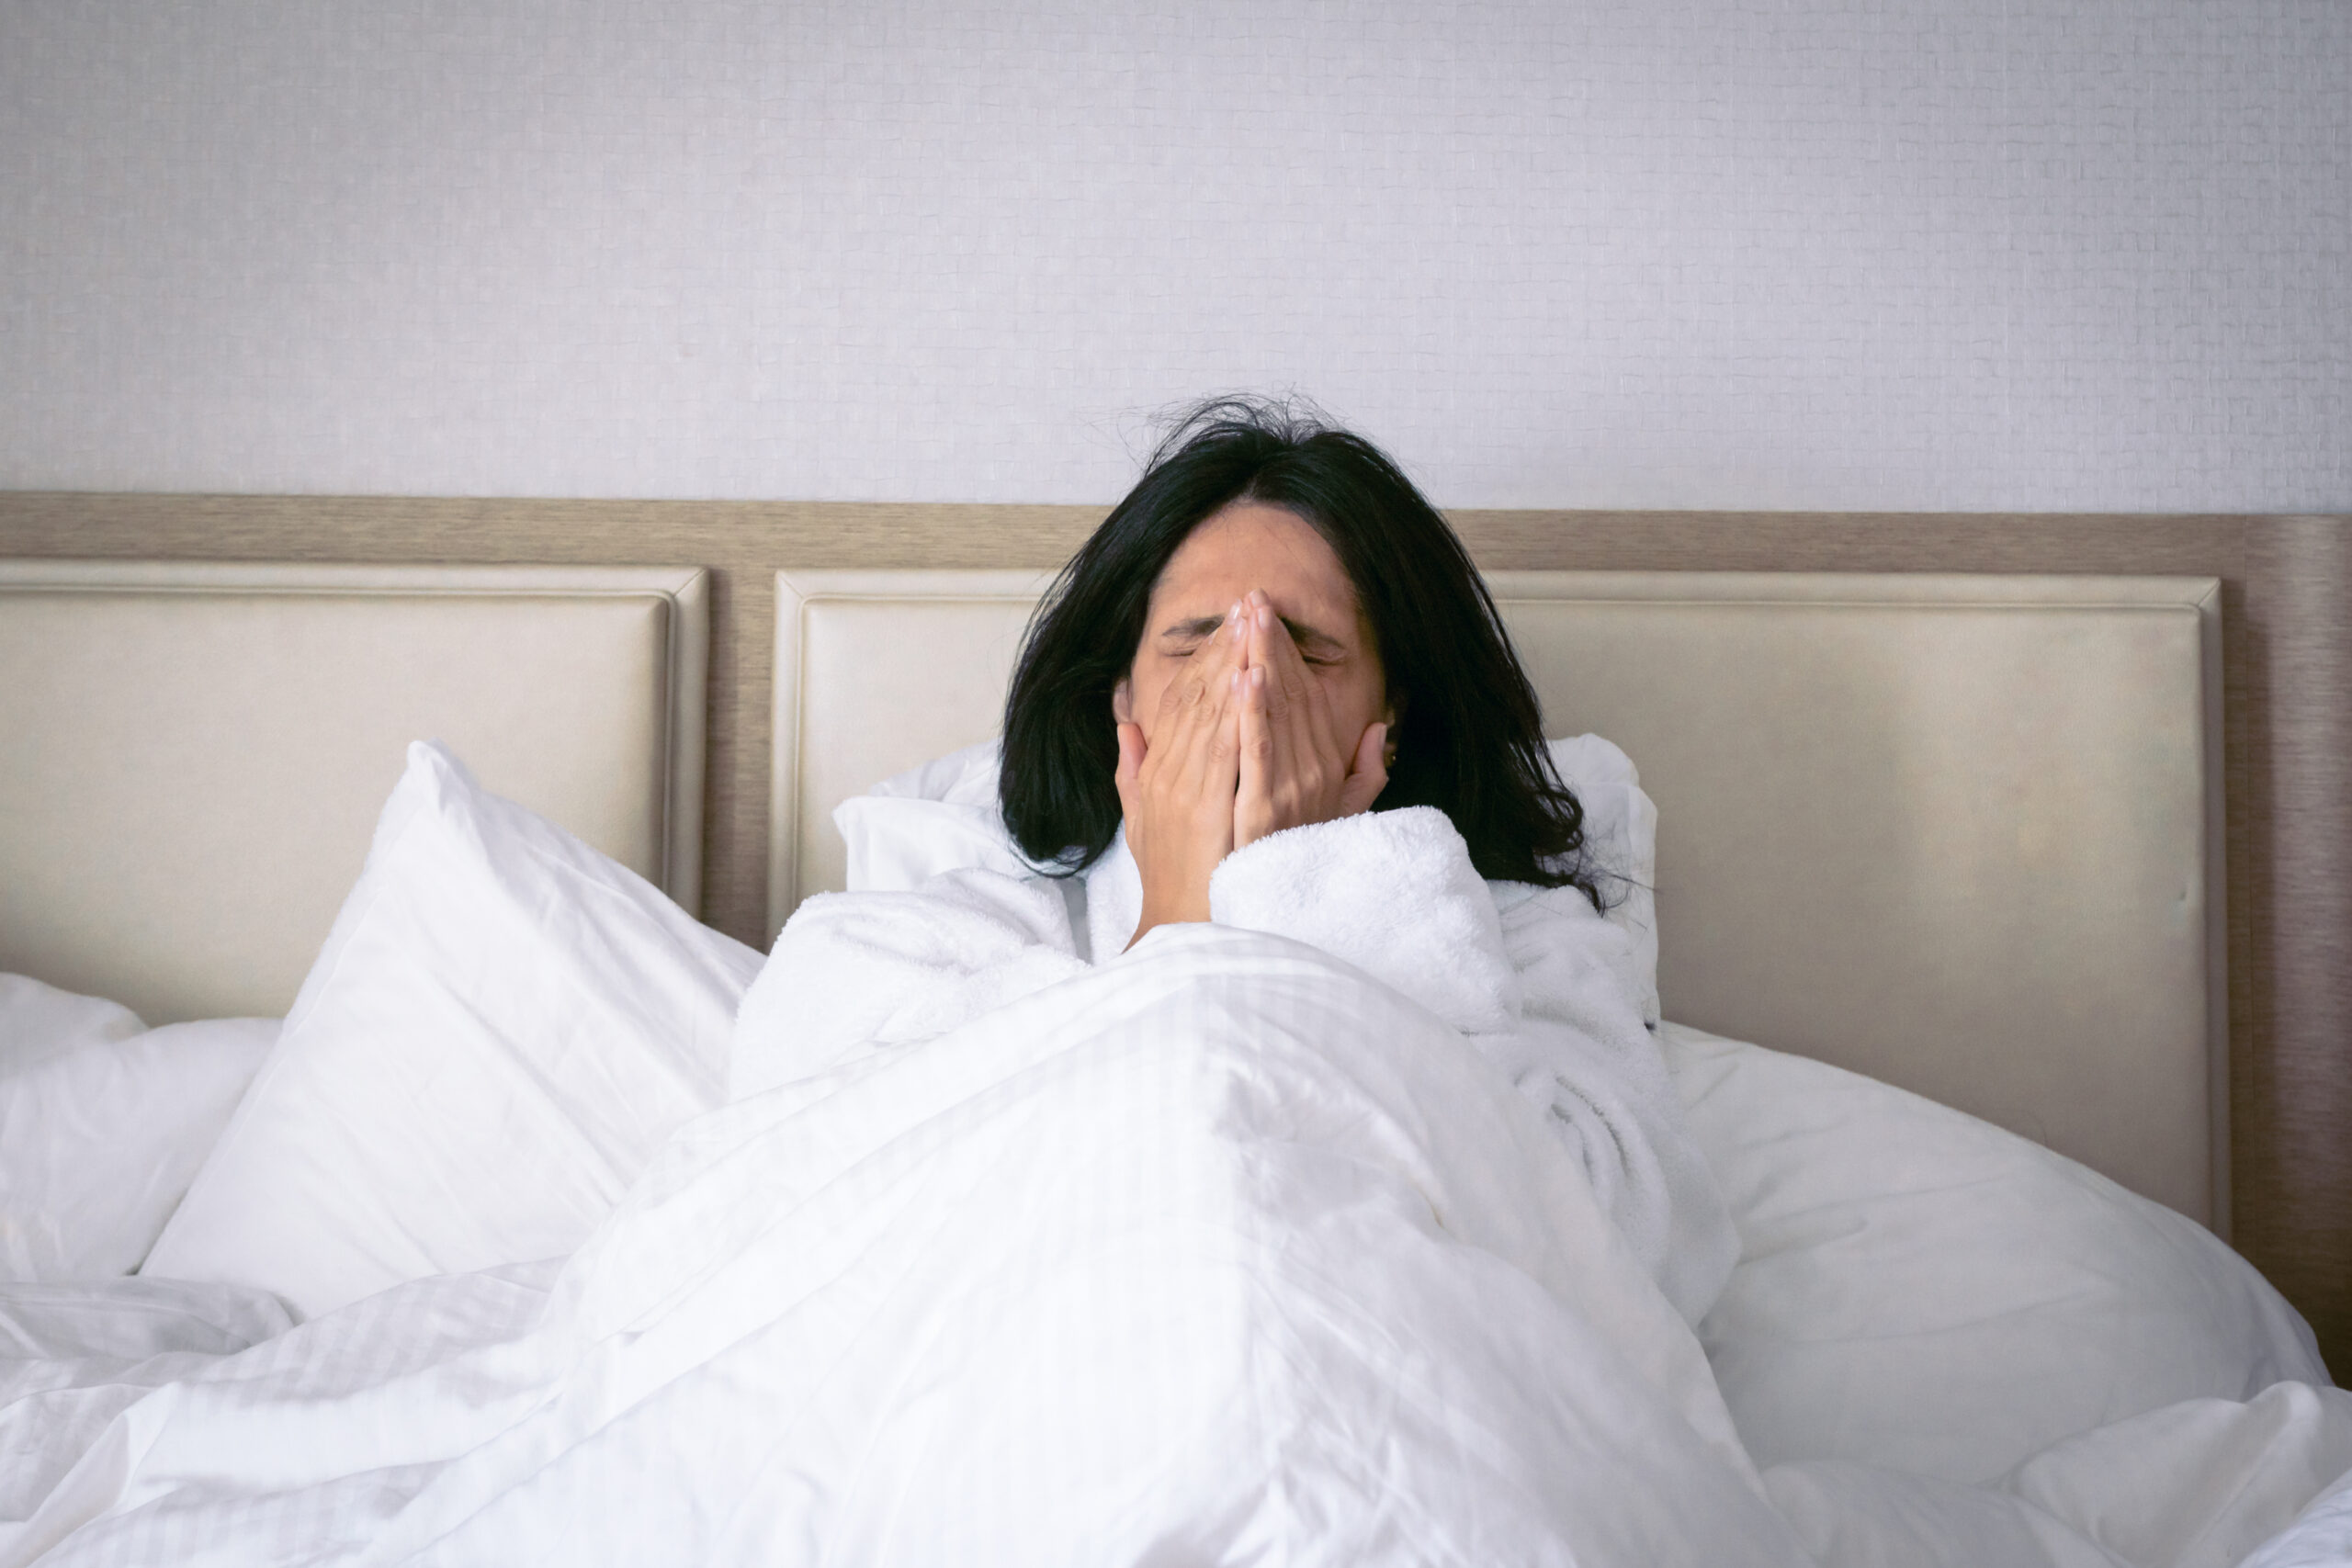 Mujer estornudando en la cama, sugiriendo la presencia de ácaros, en contexto con el post de detección de ácaros